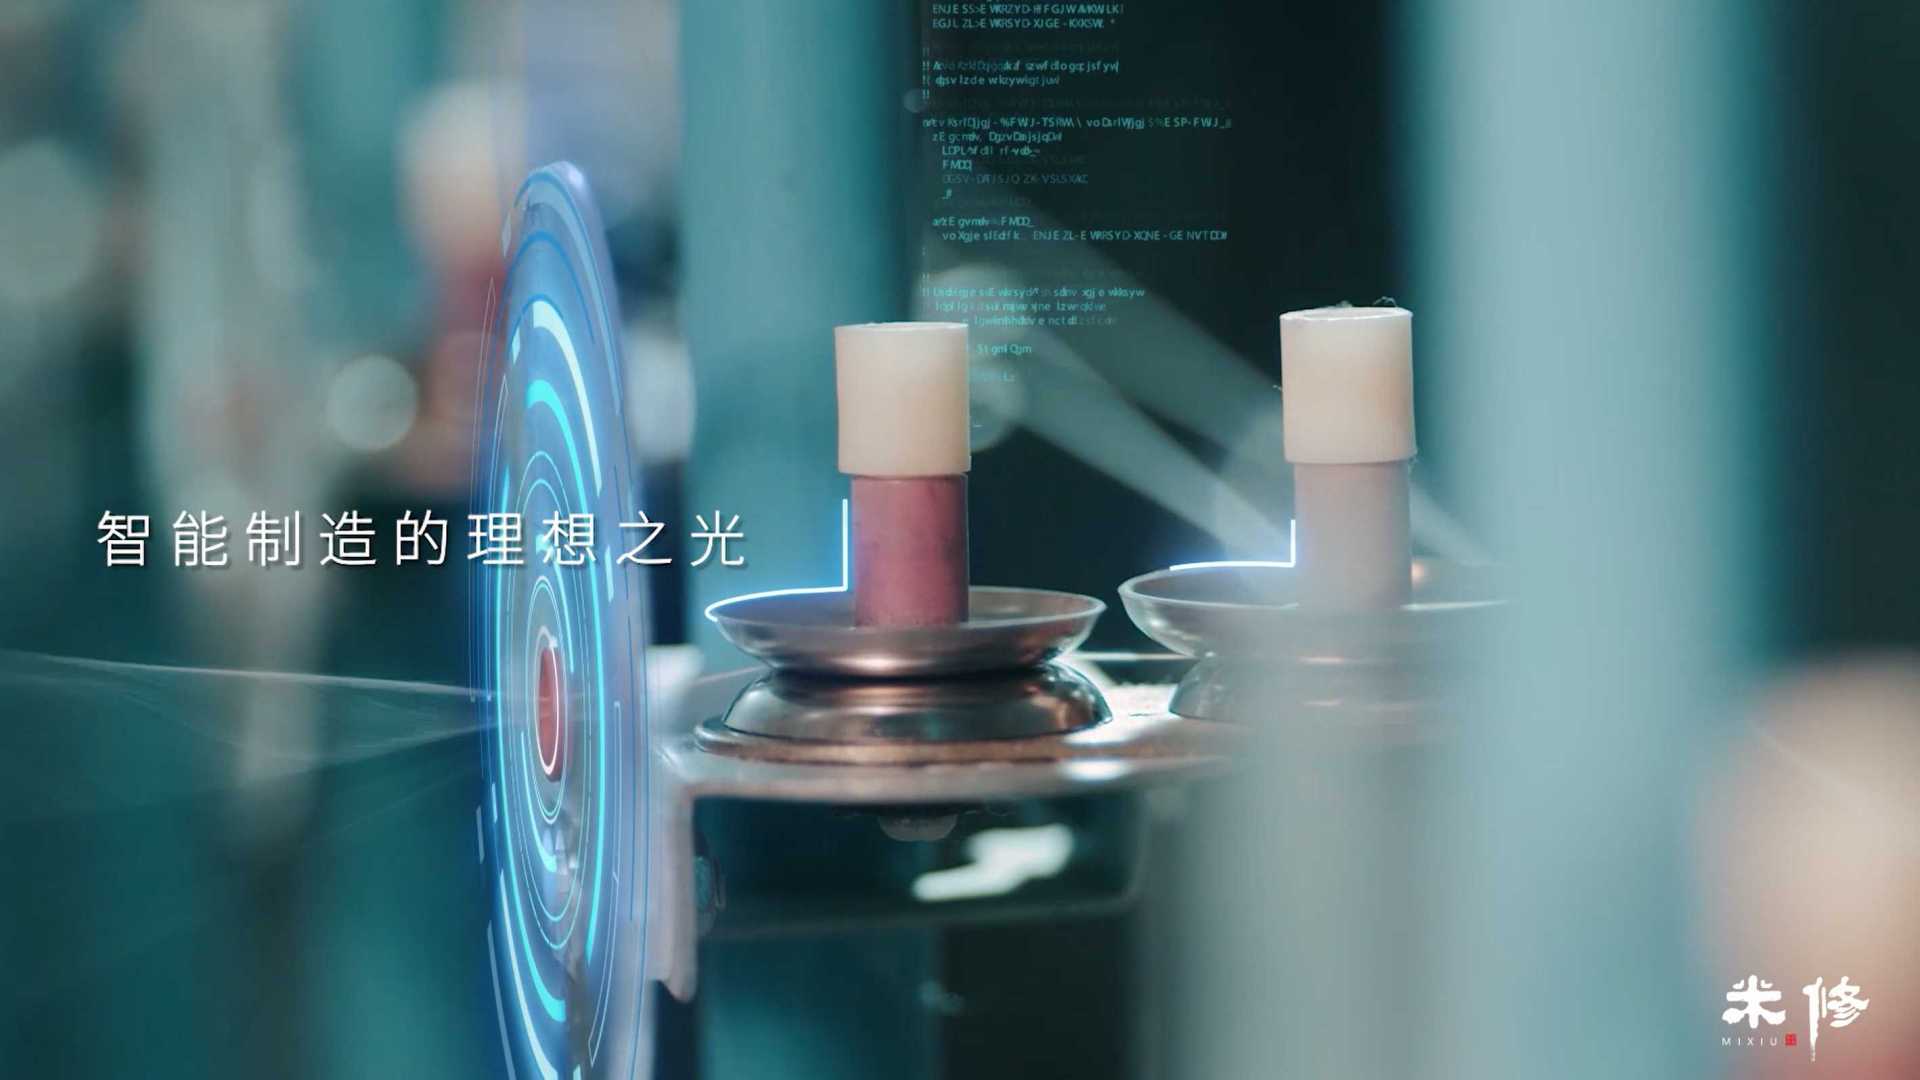 环思科技-工厂展示宣传片-米修影视摄制